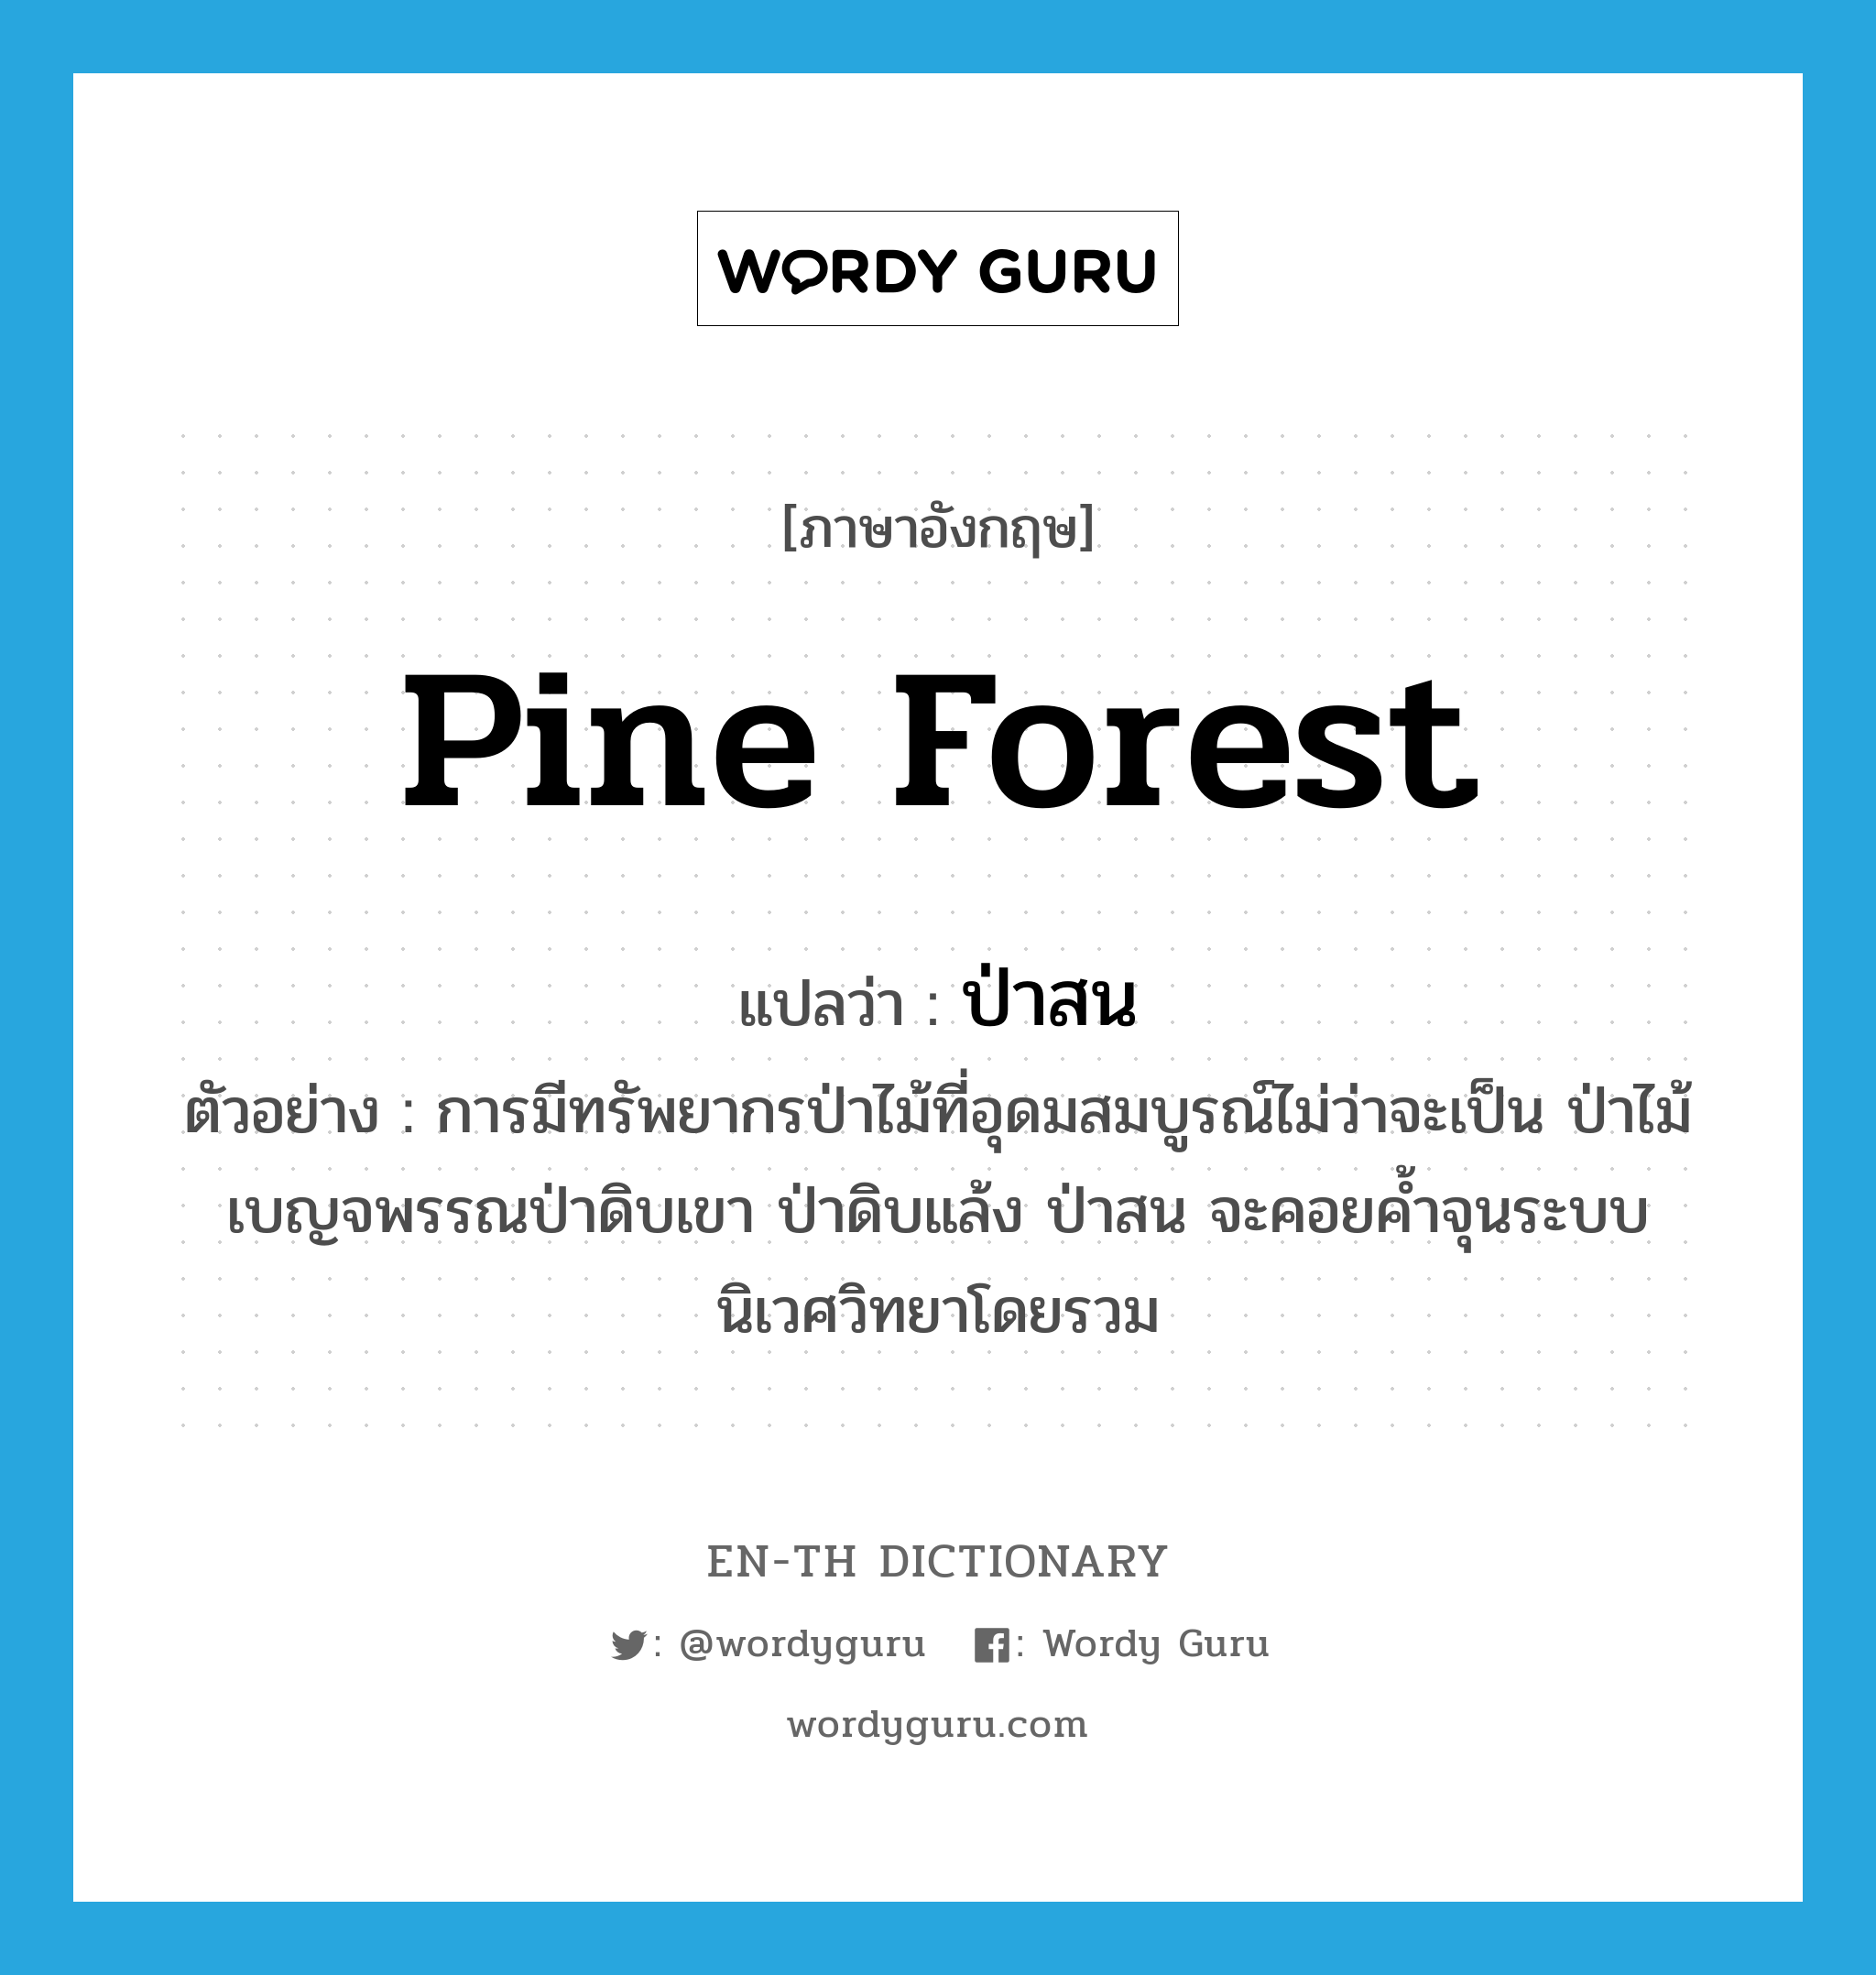 pine forest แปลว่า?, คำศัพท์ภาษาอังกฤษ pine forest แปลว่า ป่าสน ประเภท N ตัวอย่าง การมีทรัพยากรป่าไม้ที่อุดมสมบูรณ์ไม่ว่าจะเป็น ป่าไม้เบญจพรรณป่าดิบเขา ป่าดิบแล้ง ป่าสน จะคอยค้ำจุนระบบนิเวศวิทยาโดยรวม หมวด N